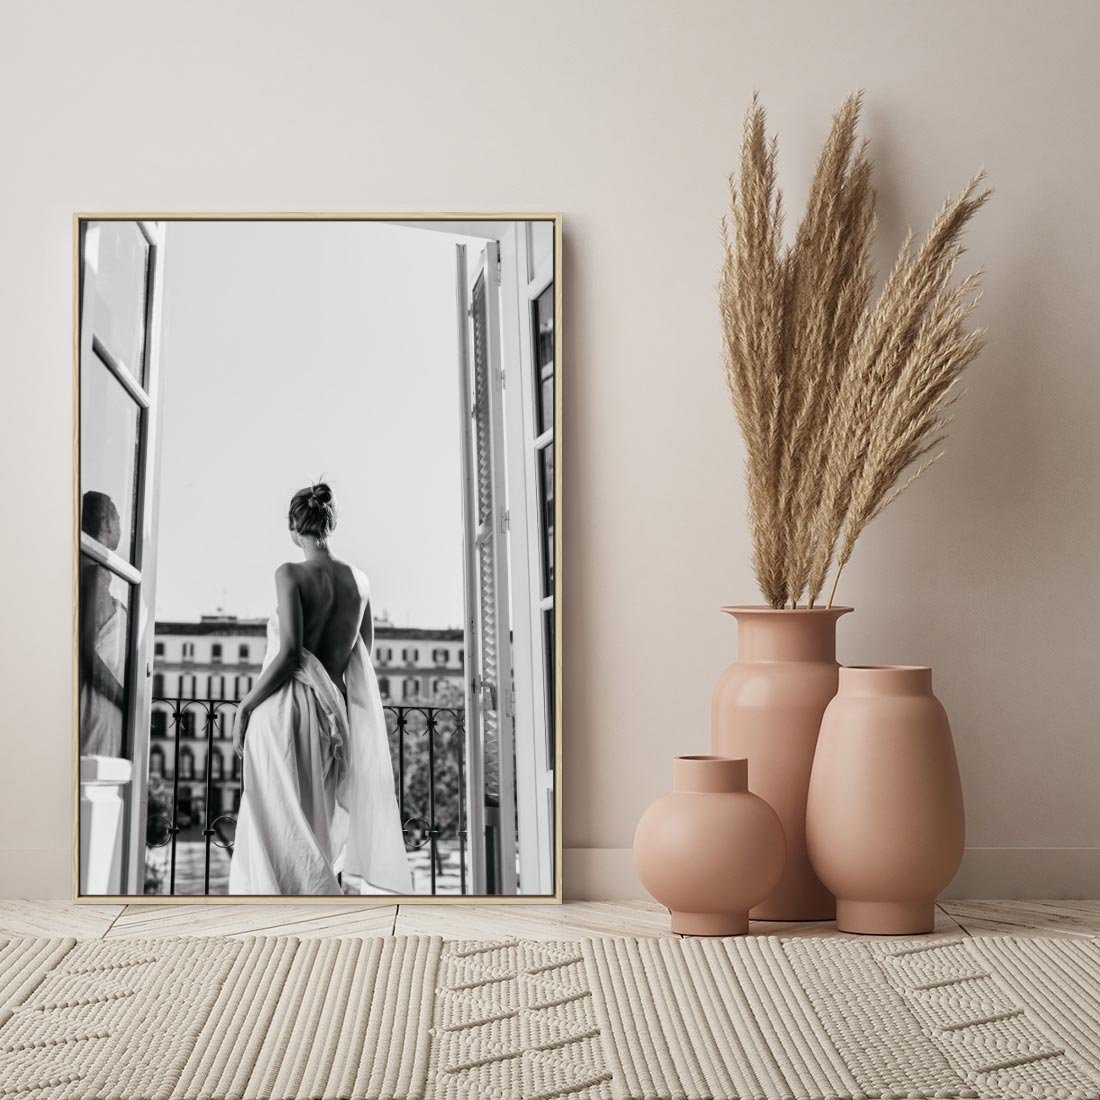 Obraz w ramie 50x70 - Poranki w Paryżu - czarno białe zdjęcie, kobieta w prześcieradle na balkonie - rama drewno